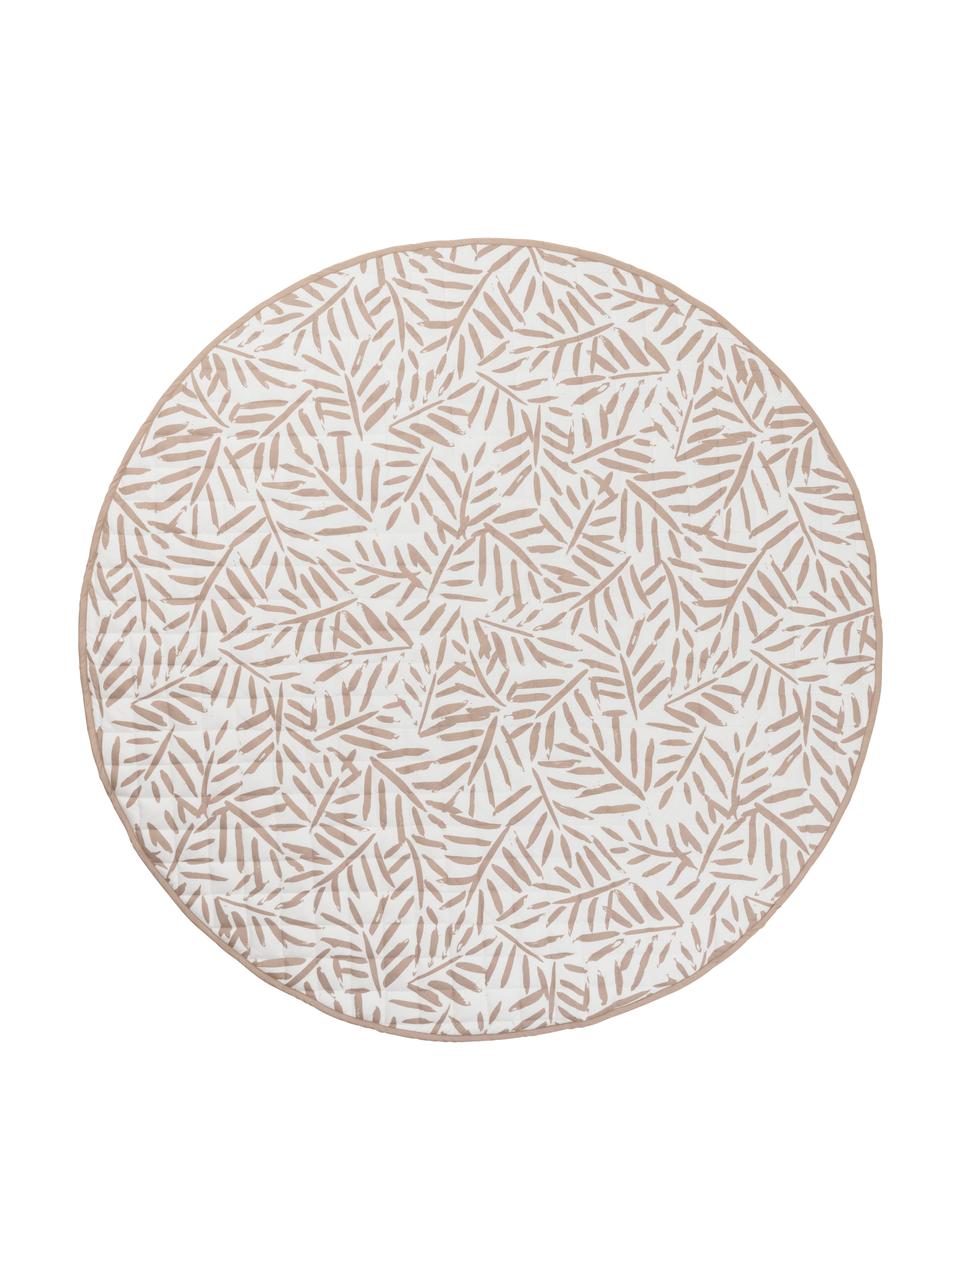 Dwustronna mata do zabawy Seashell, Tapicerka: 100% bawełna, Blady różowy, biały, Ø 133 cm